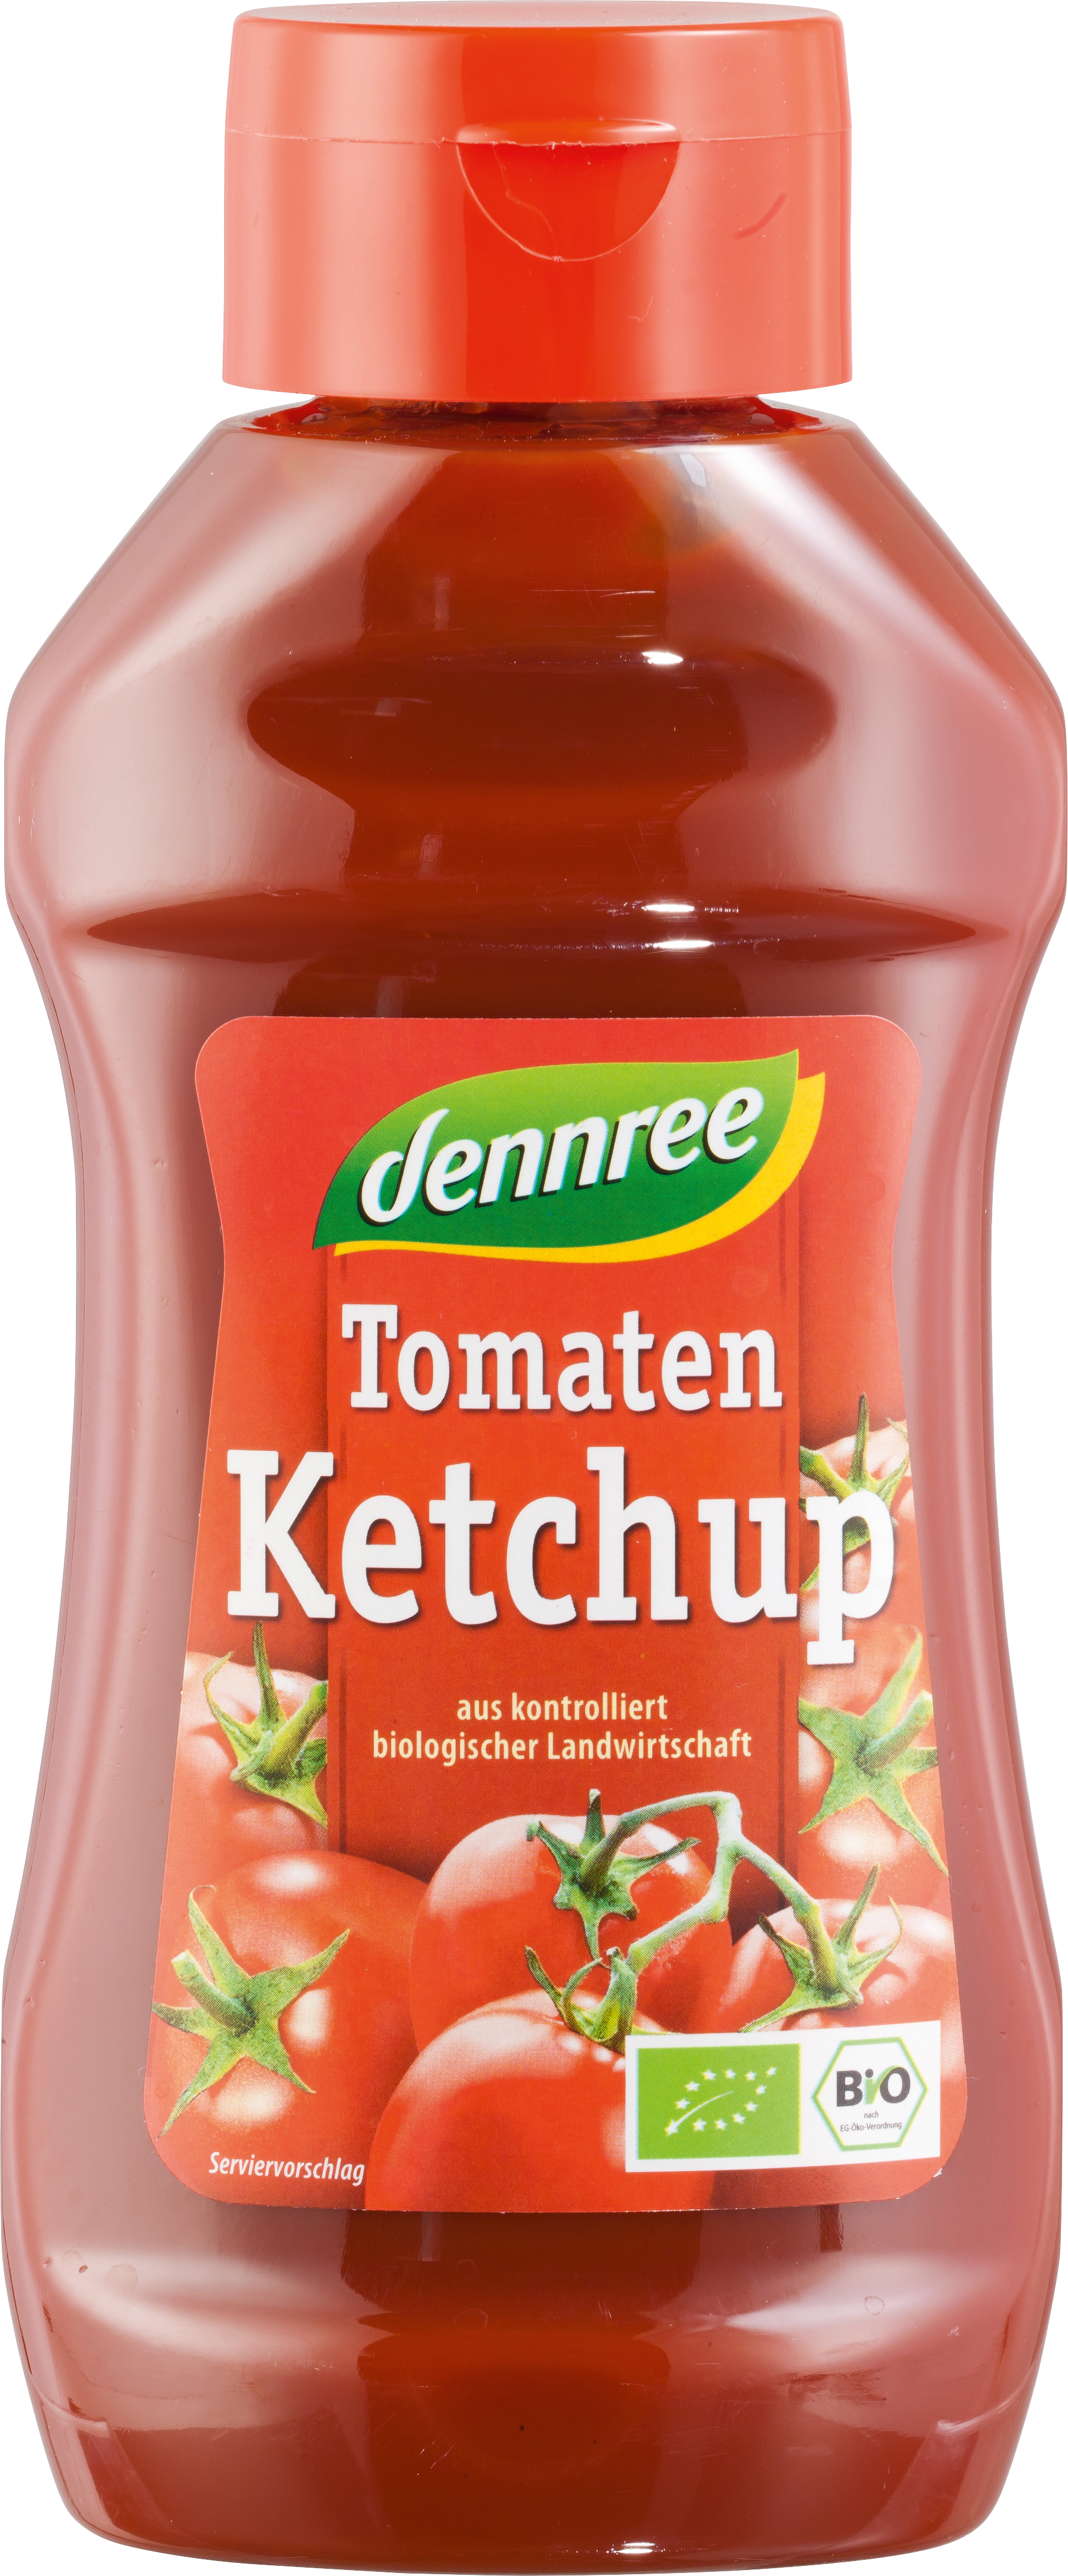 Dennree Tomaten Ketchup 500ml Squeezerflasche